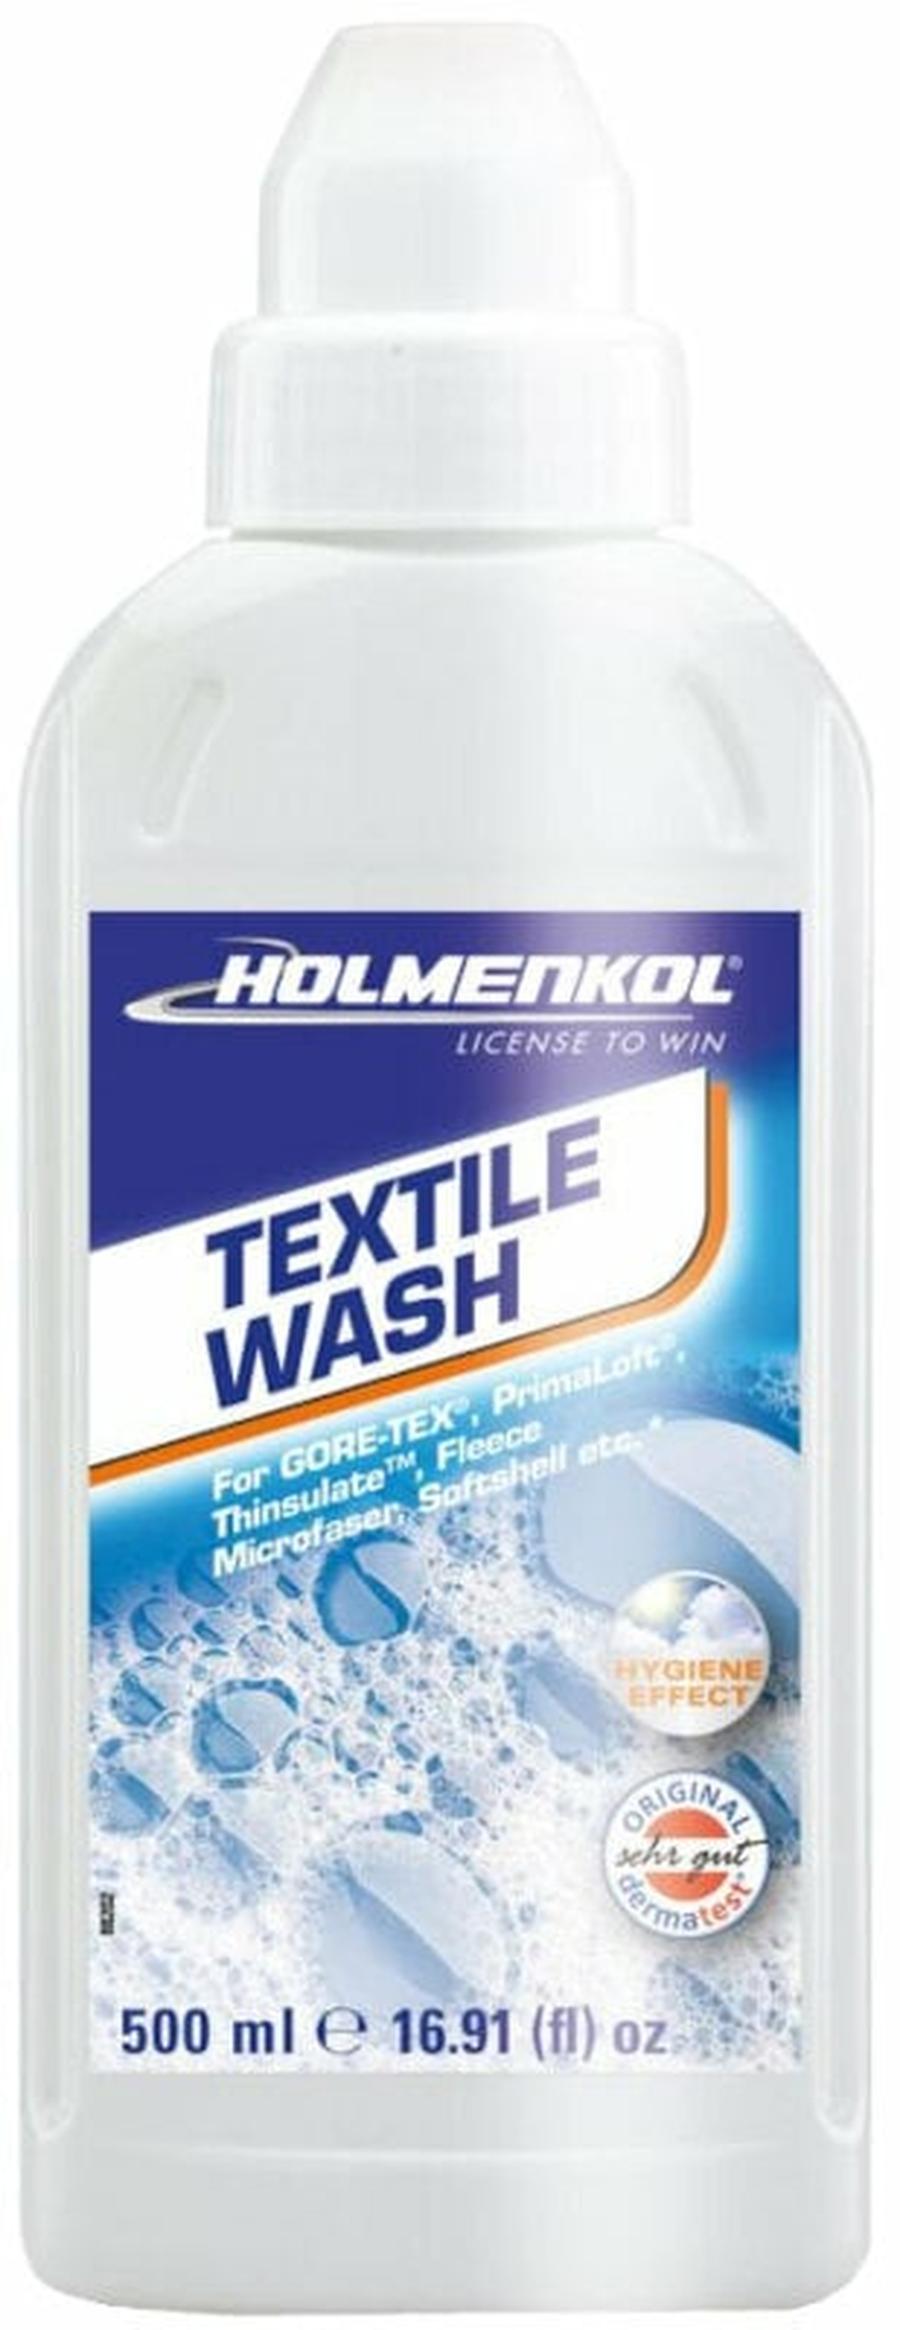 Holmenkol Textile Wash 500 ml